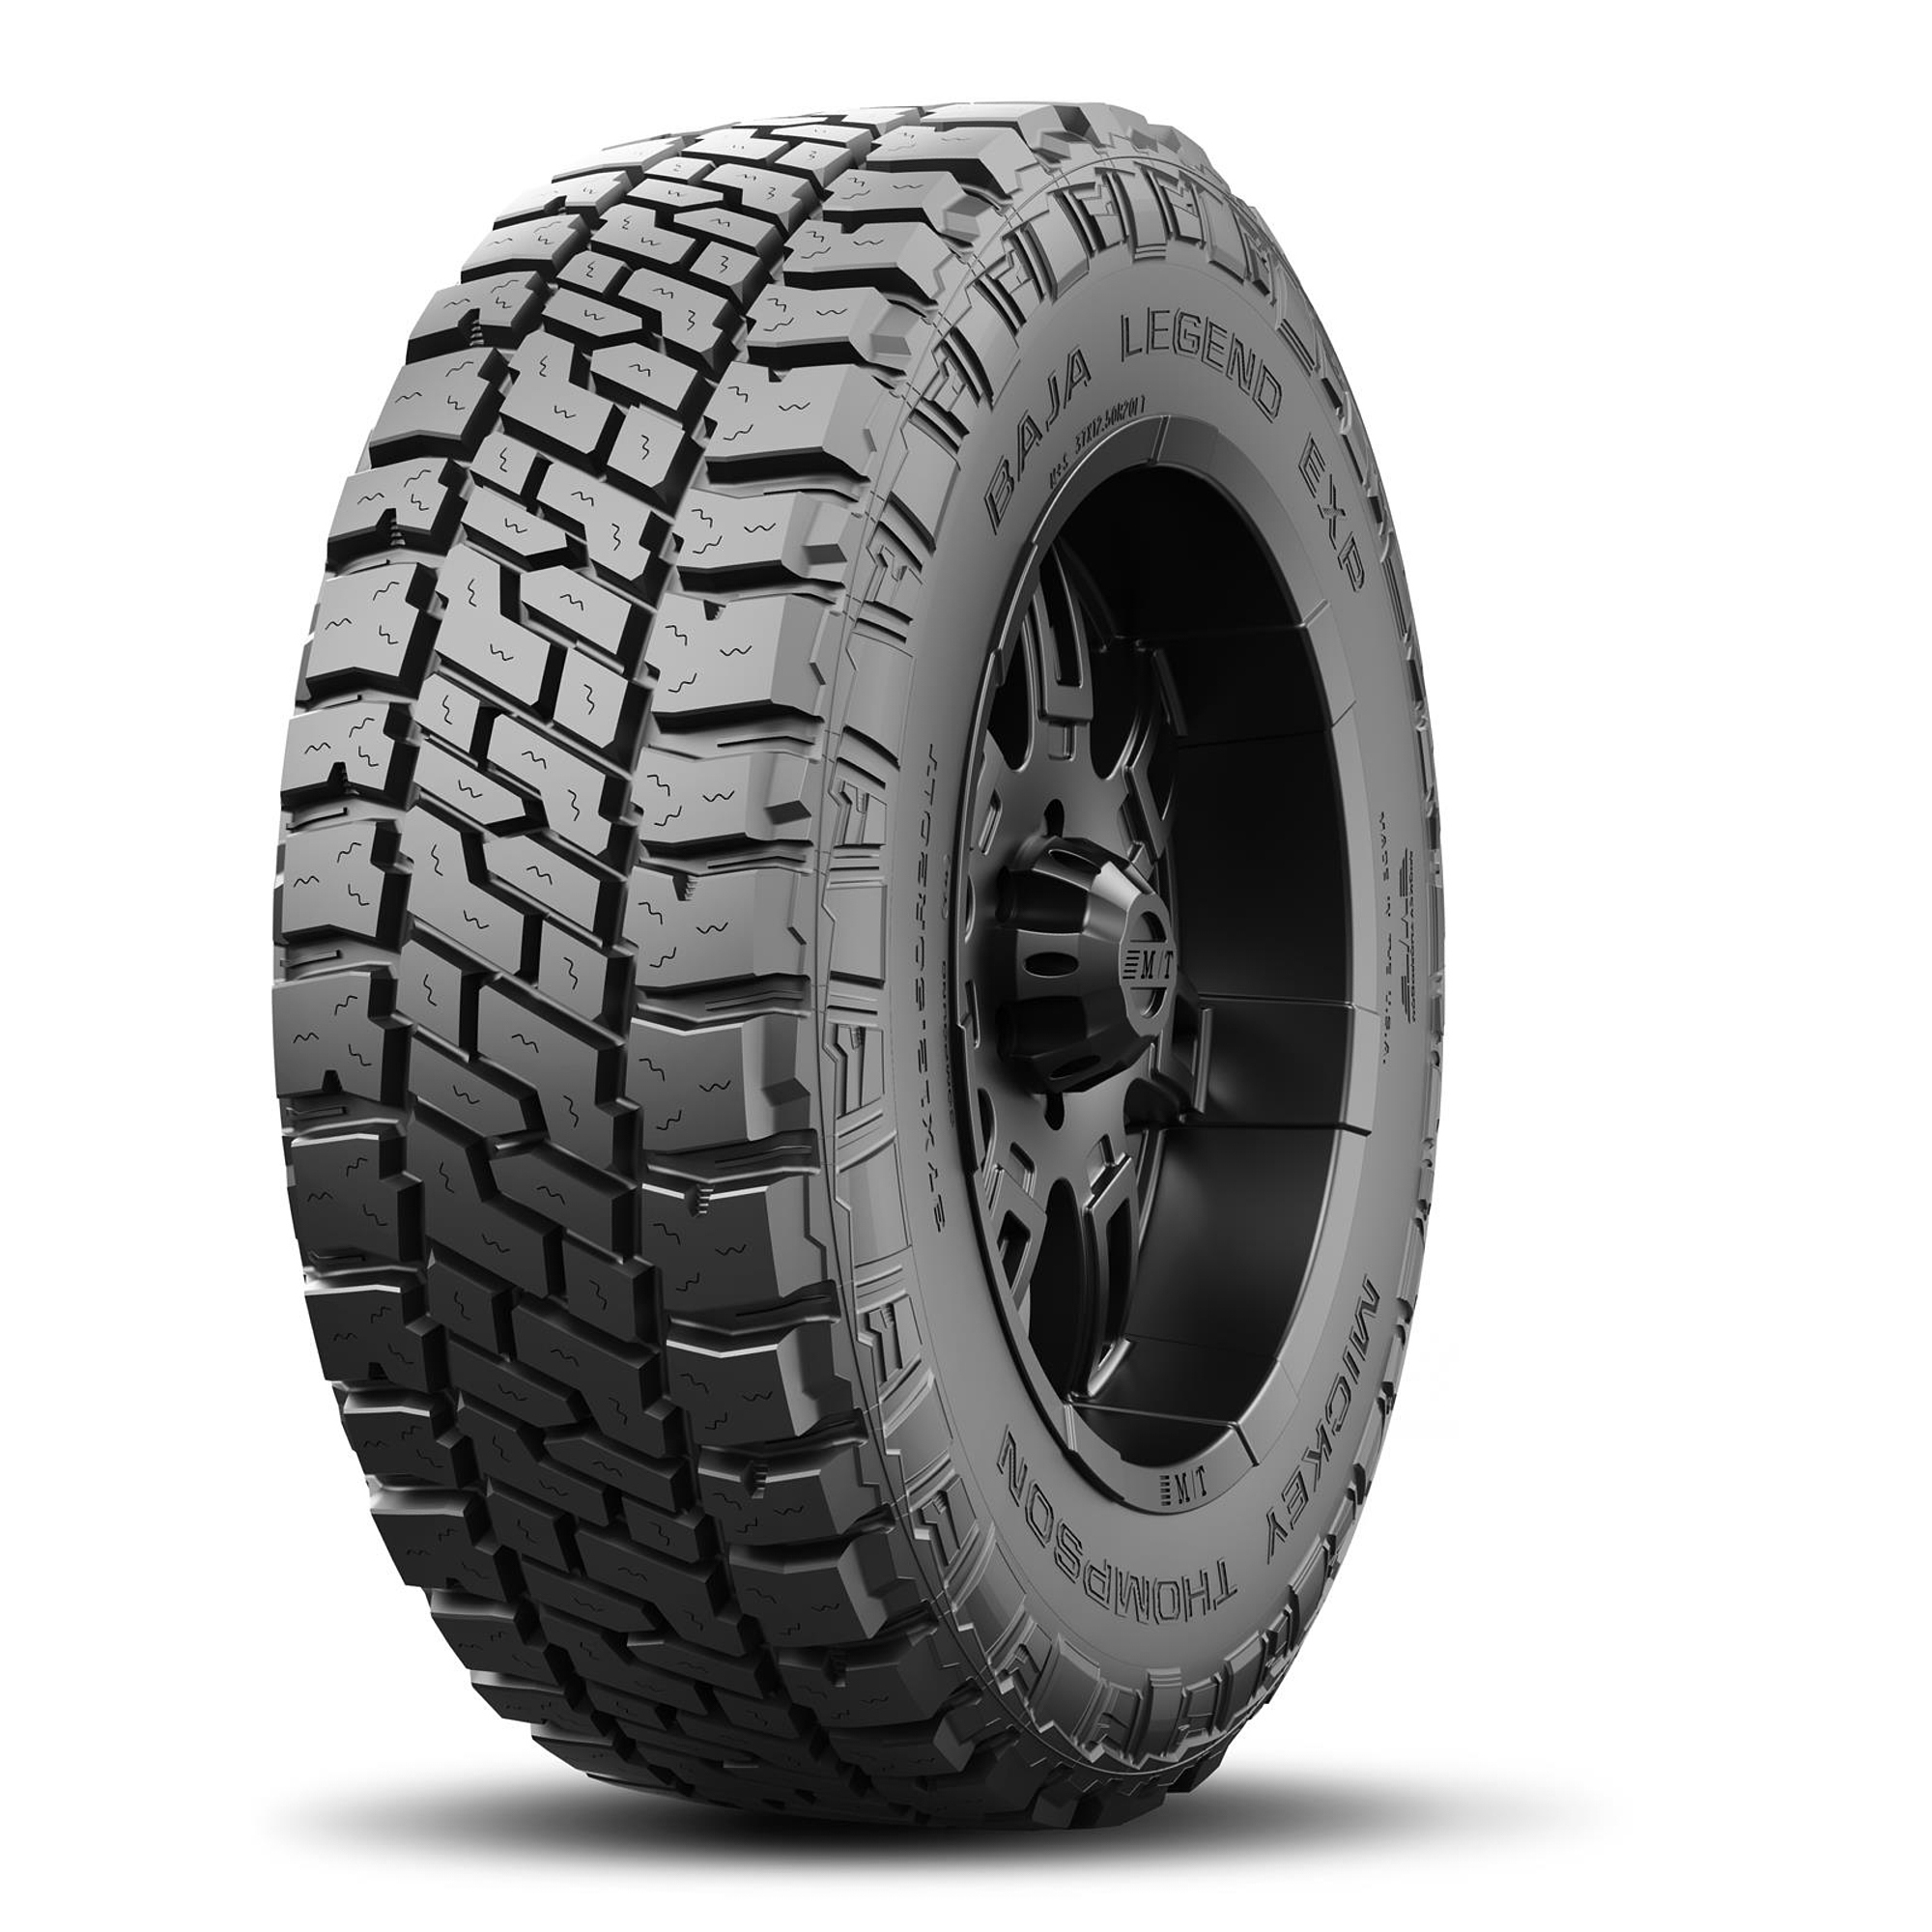 Baja Legend EXP Tire 33X12.50R20LT 114Q - 249355